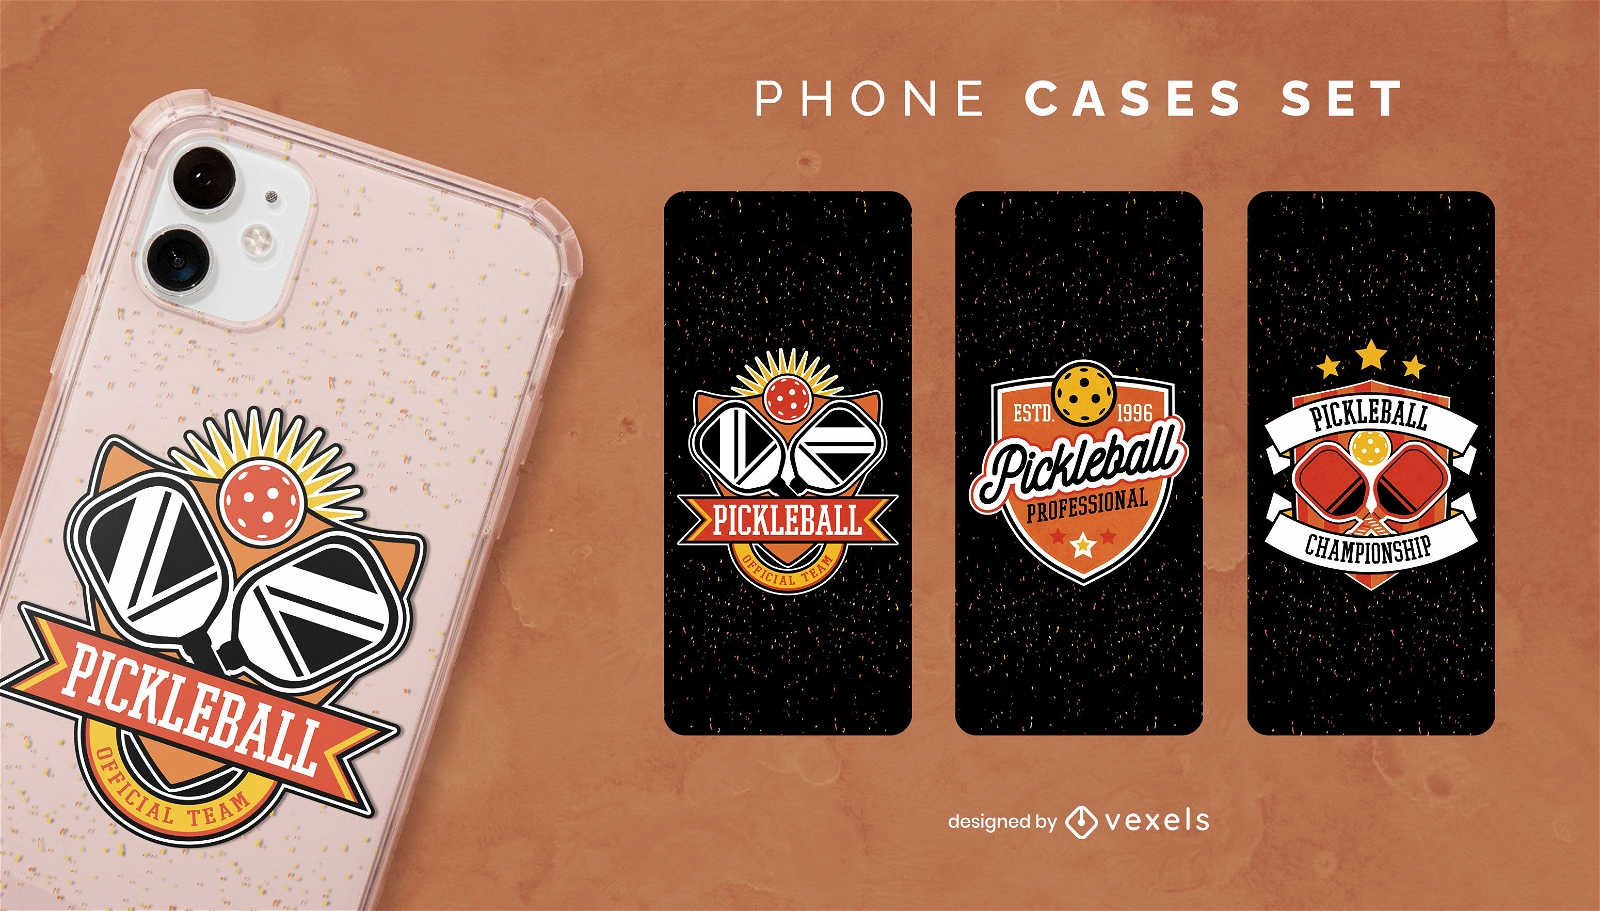 Pickleball phone cases set